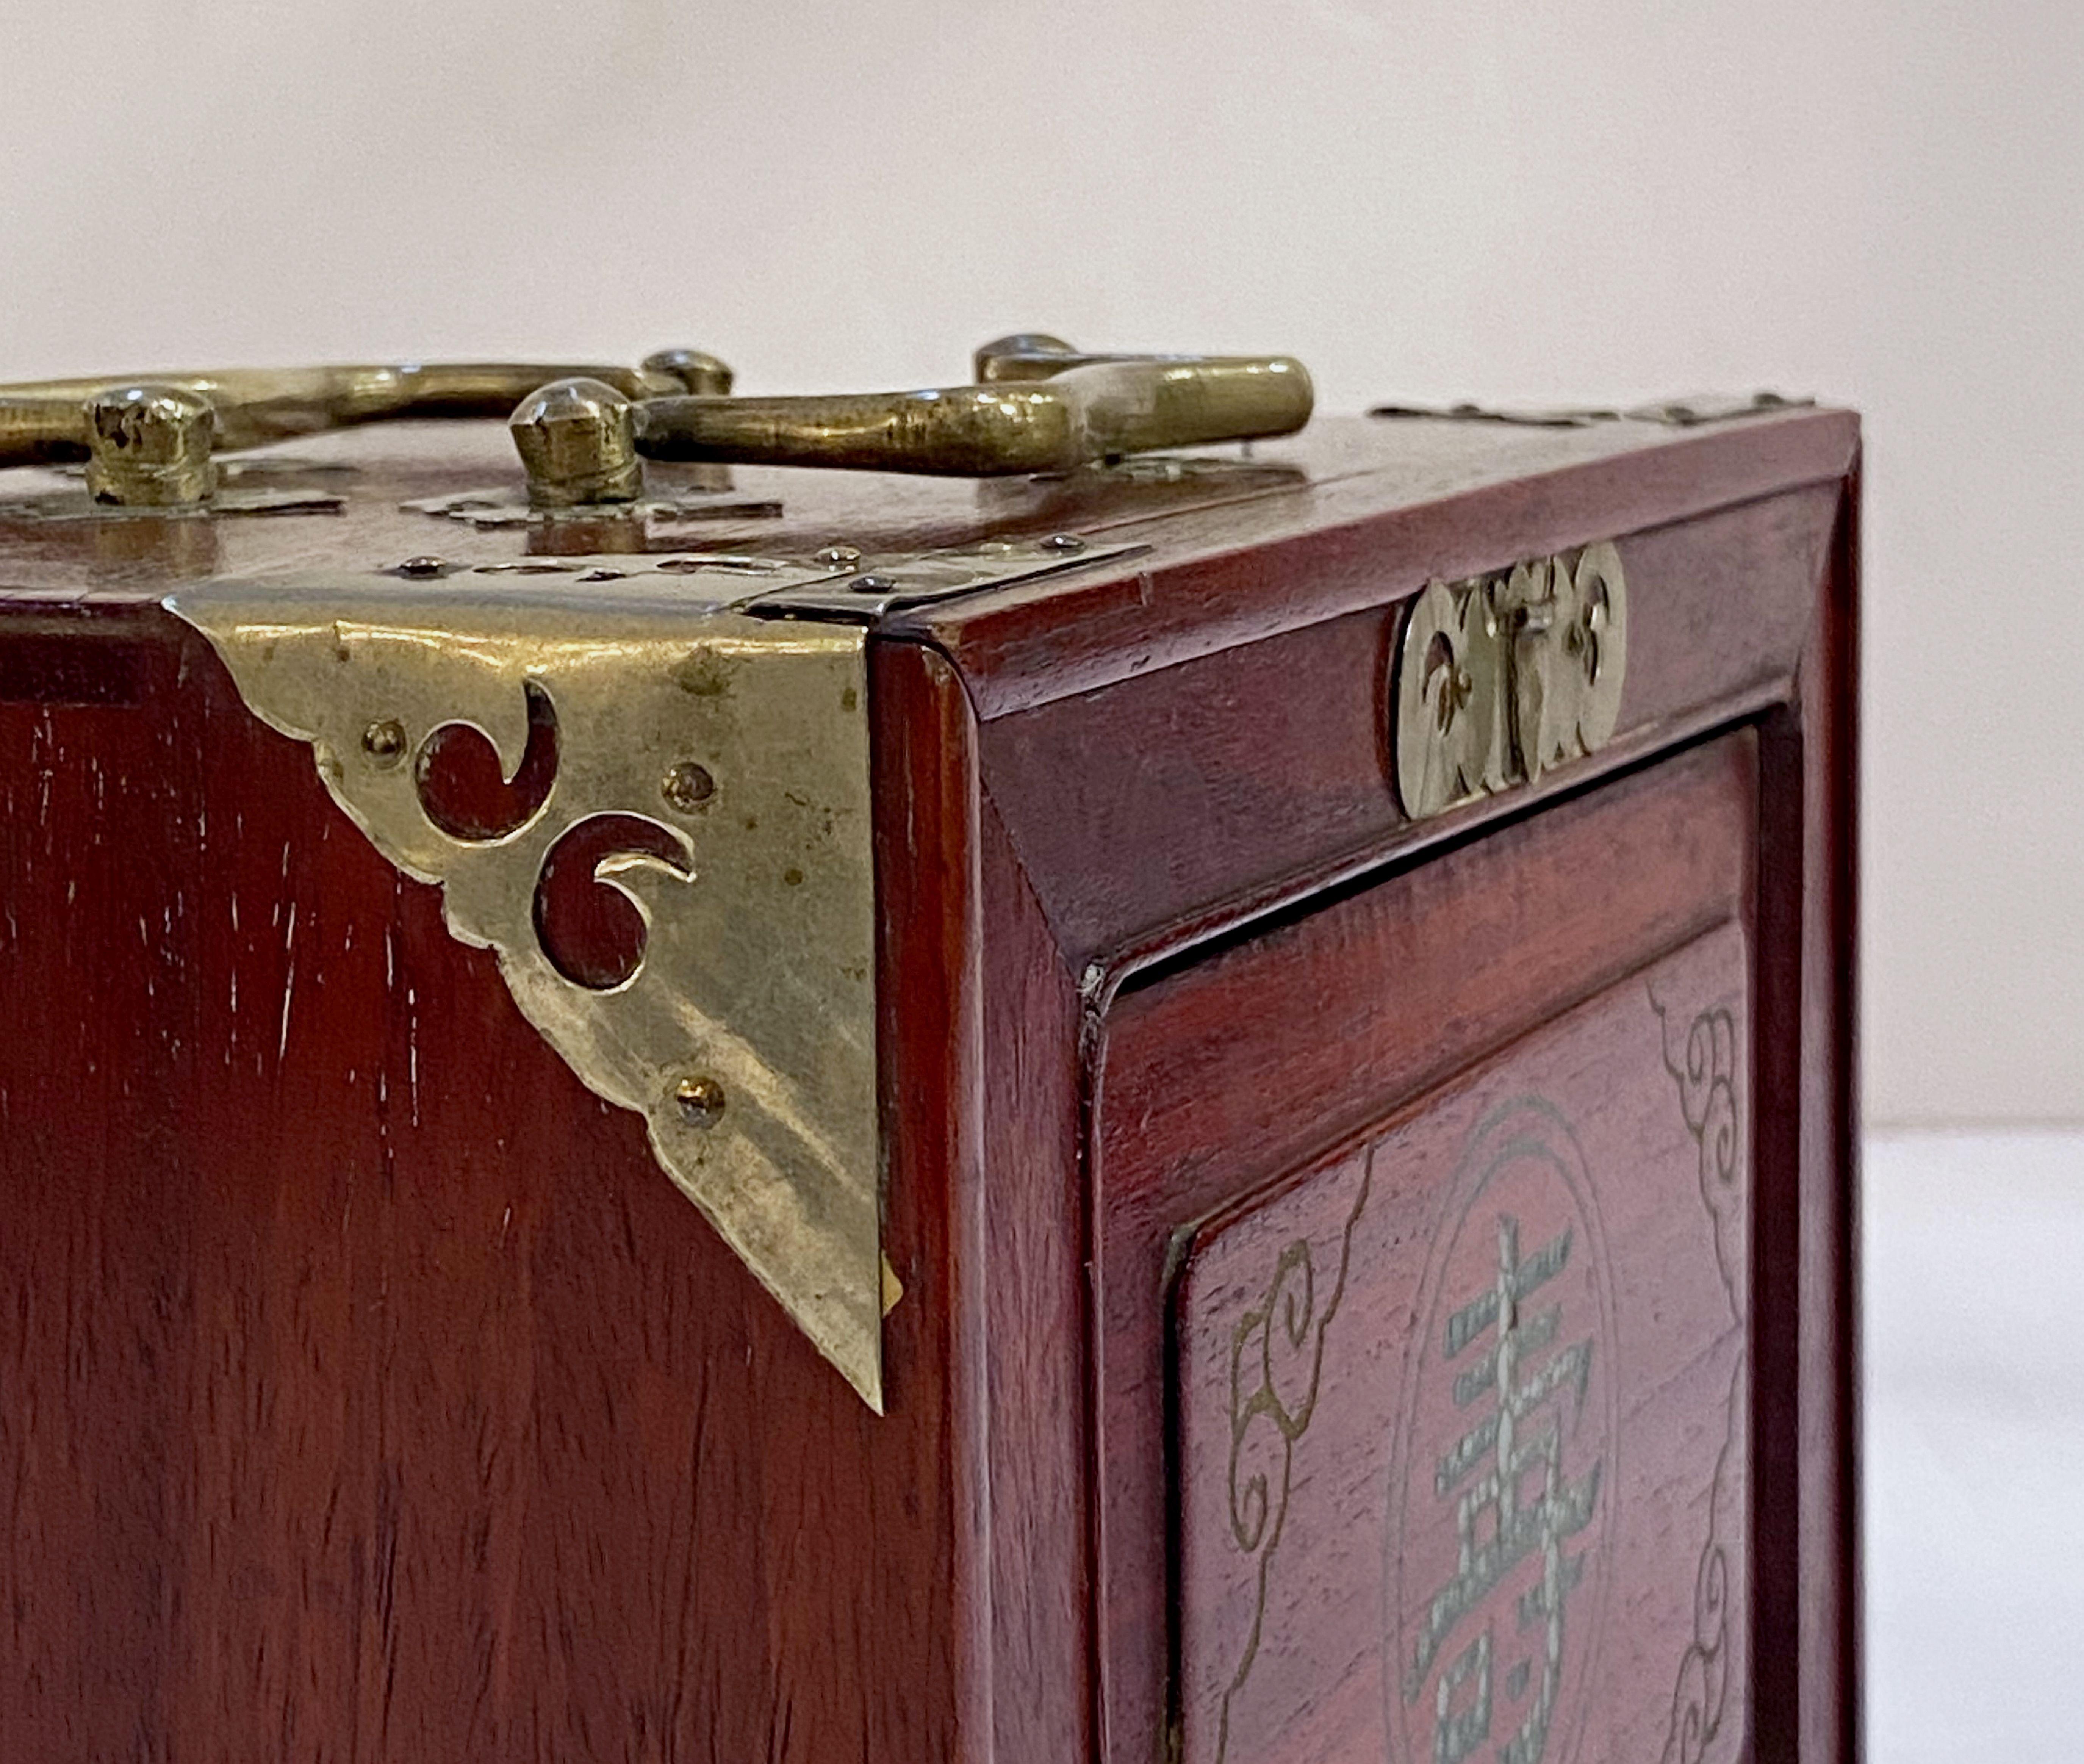 MahJong Game Set in Cabinet Box, N.Y.K. Fleet Ocean Liner Edition 12